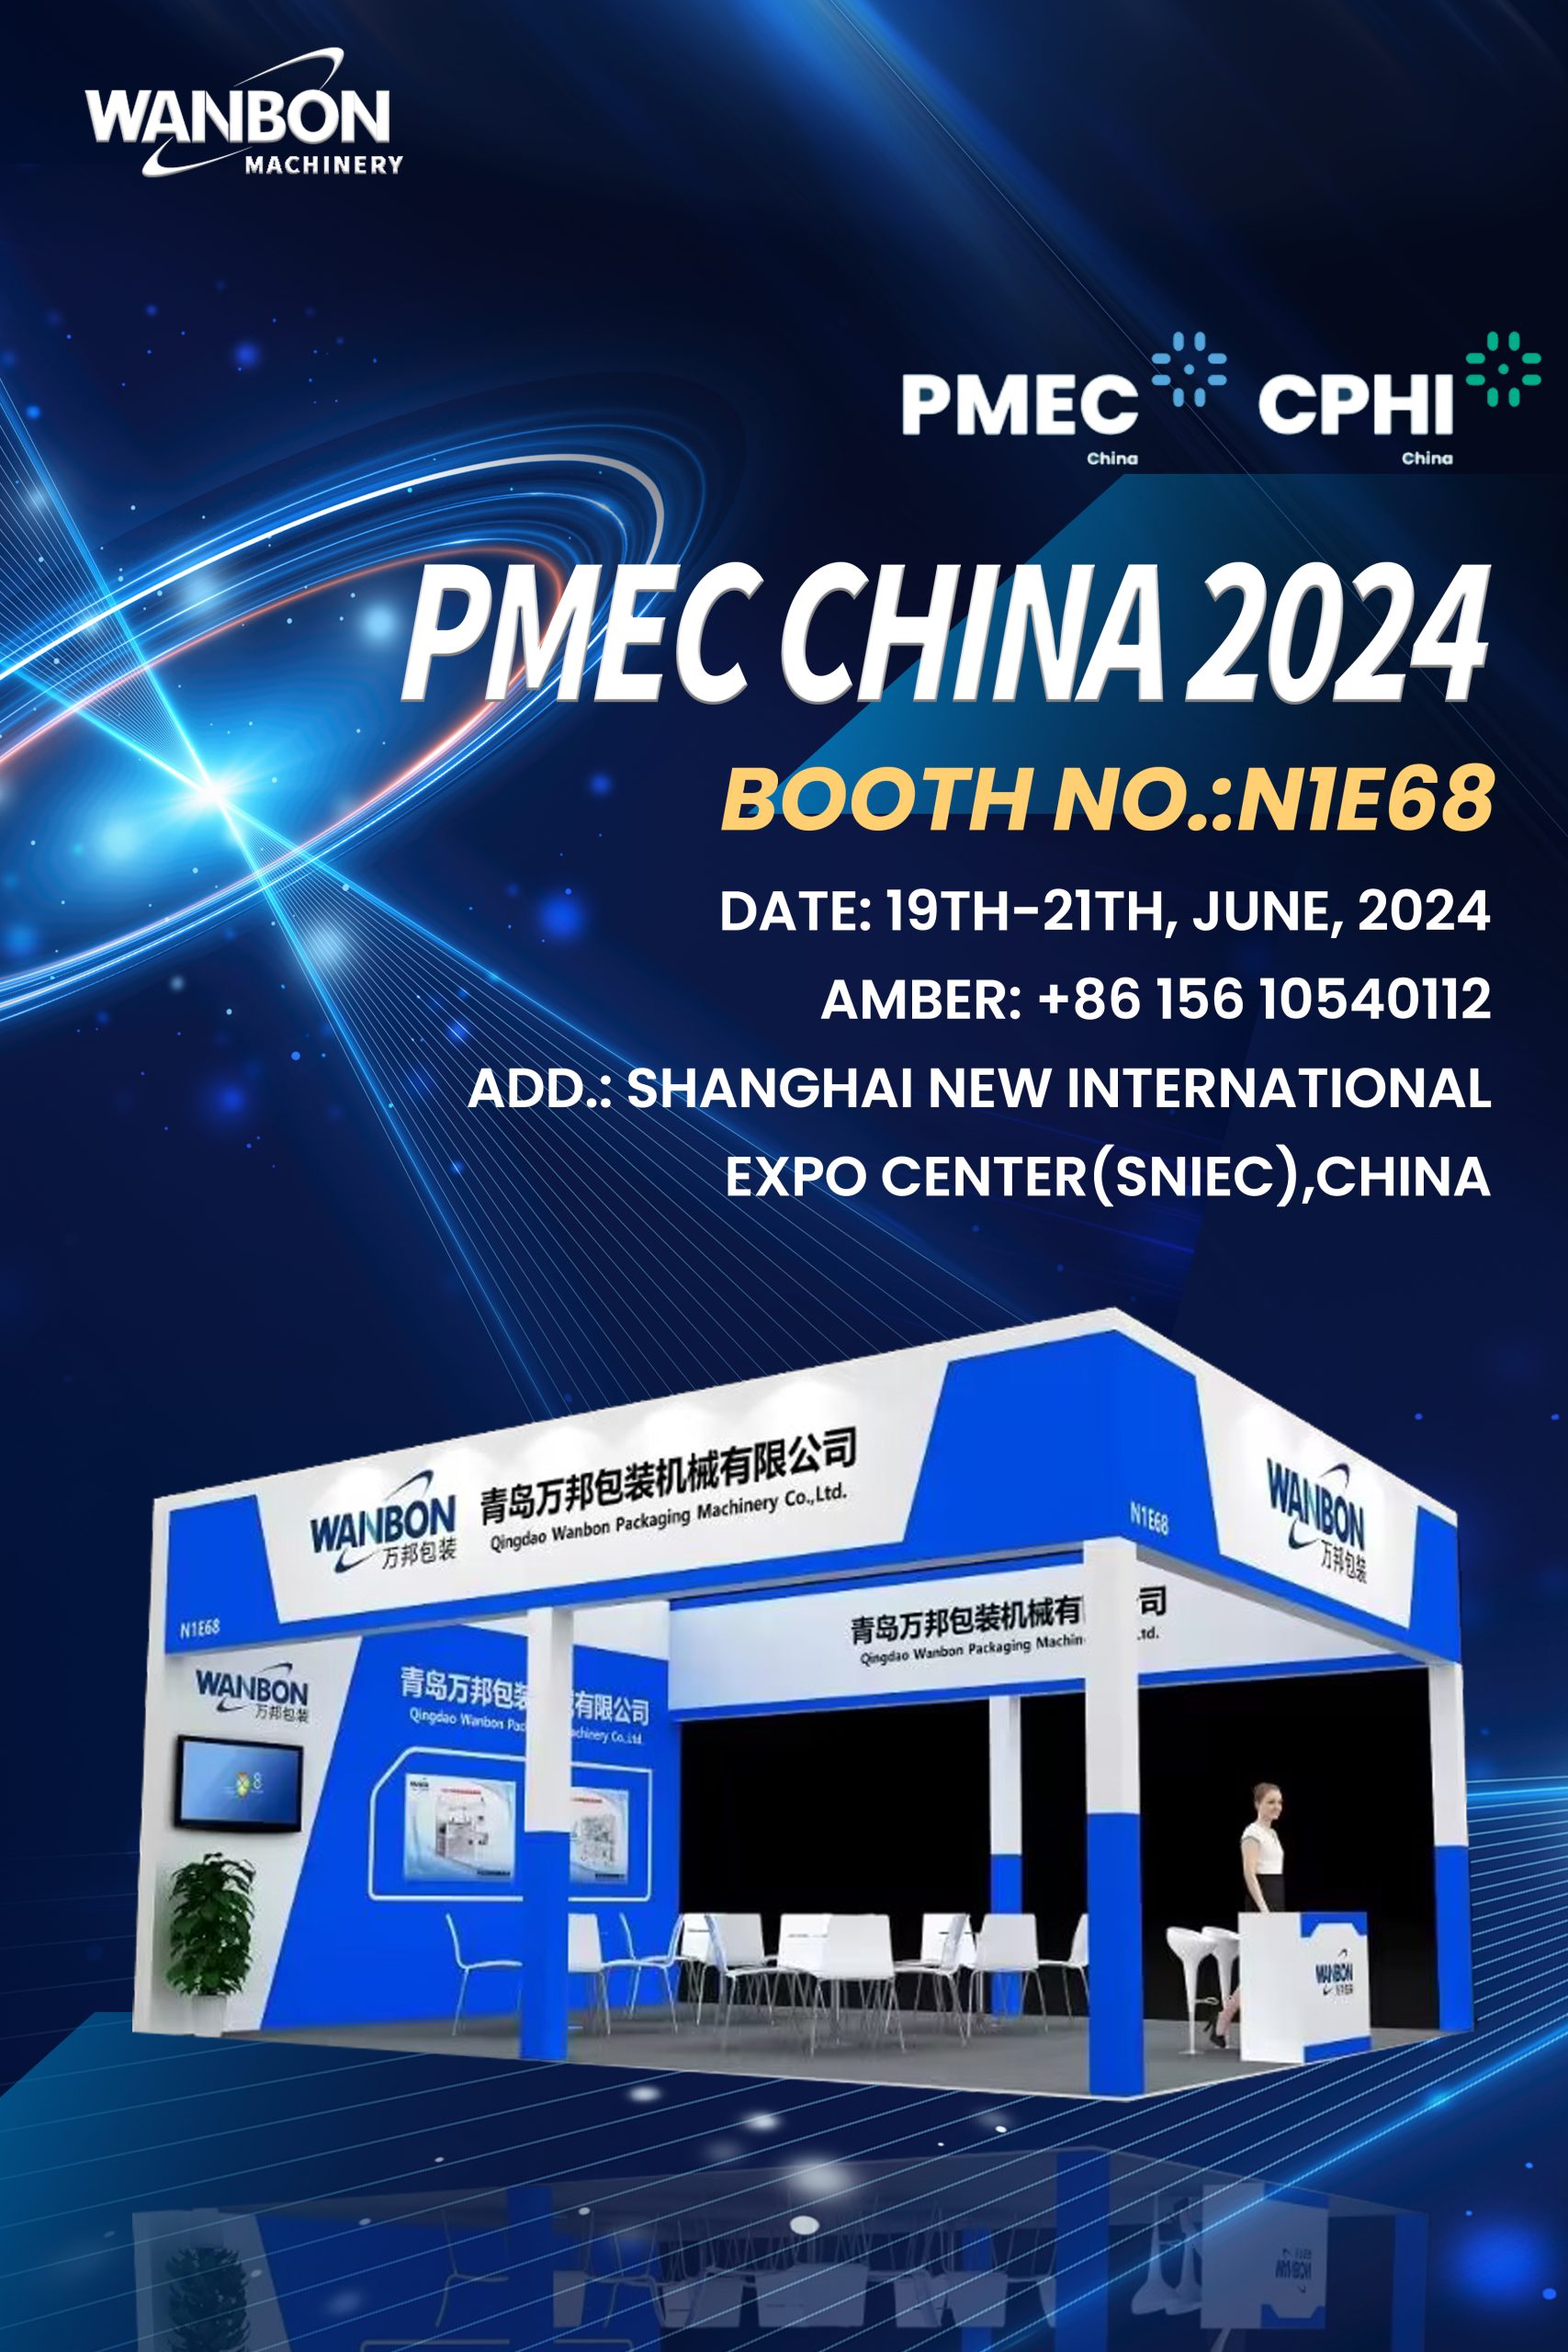 PMEC CHINA 2024 Exhibition Summary